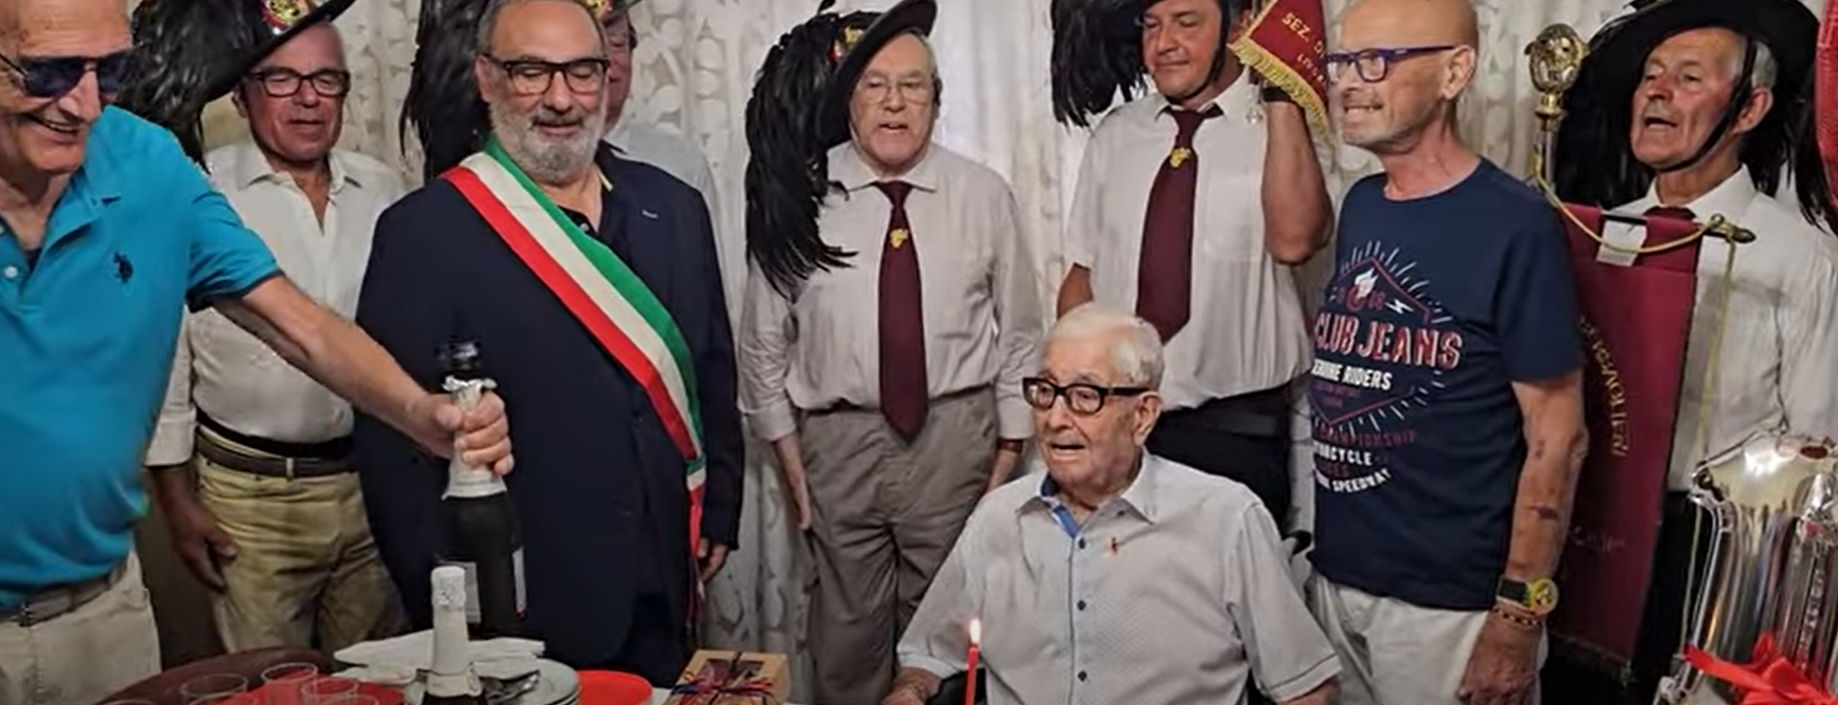 Πέθανε σε ηλικία 111 ετών ο γηραιότερος άνθρωπος της Ιταλίας και αποκαλύφθηκαν τα μυστικά της μακροζωίας του